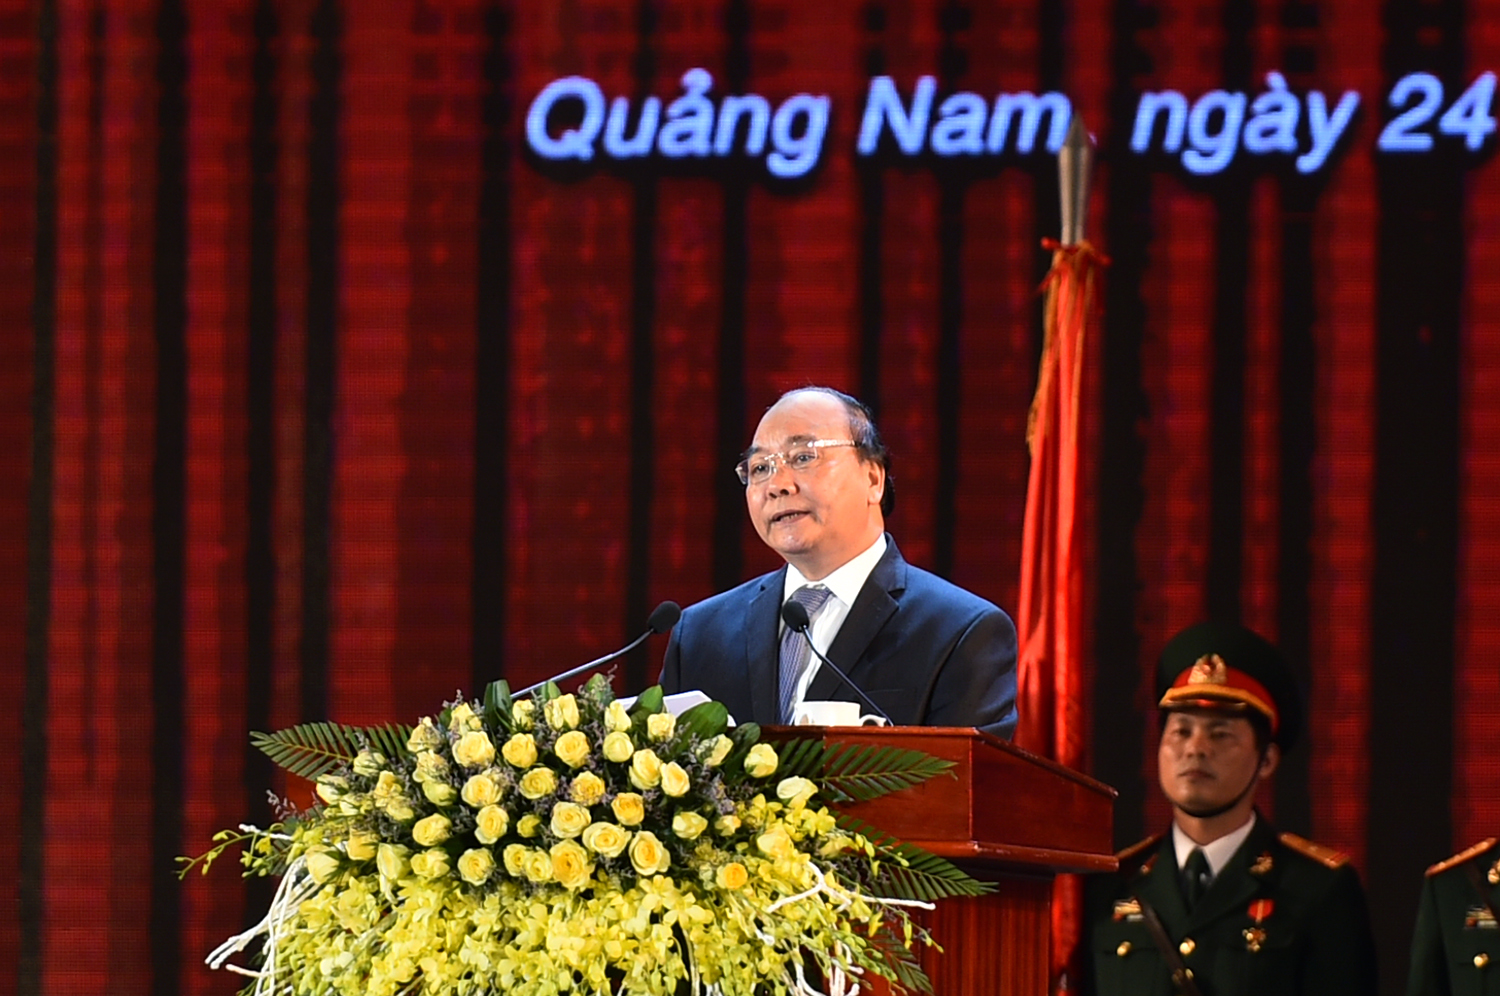  Thủ tướng Nguyễn Xuân Phúc cho rằng, sau 20 năm tái lập tỉnh, Quảng Nam đã đạt được những thành quả phát triển vượt bậc. Ảnh: VGP